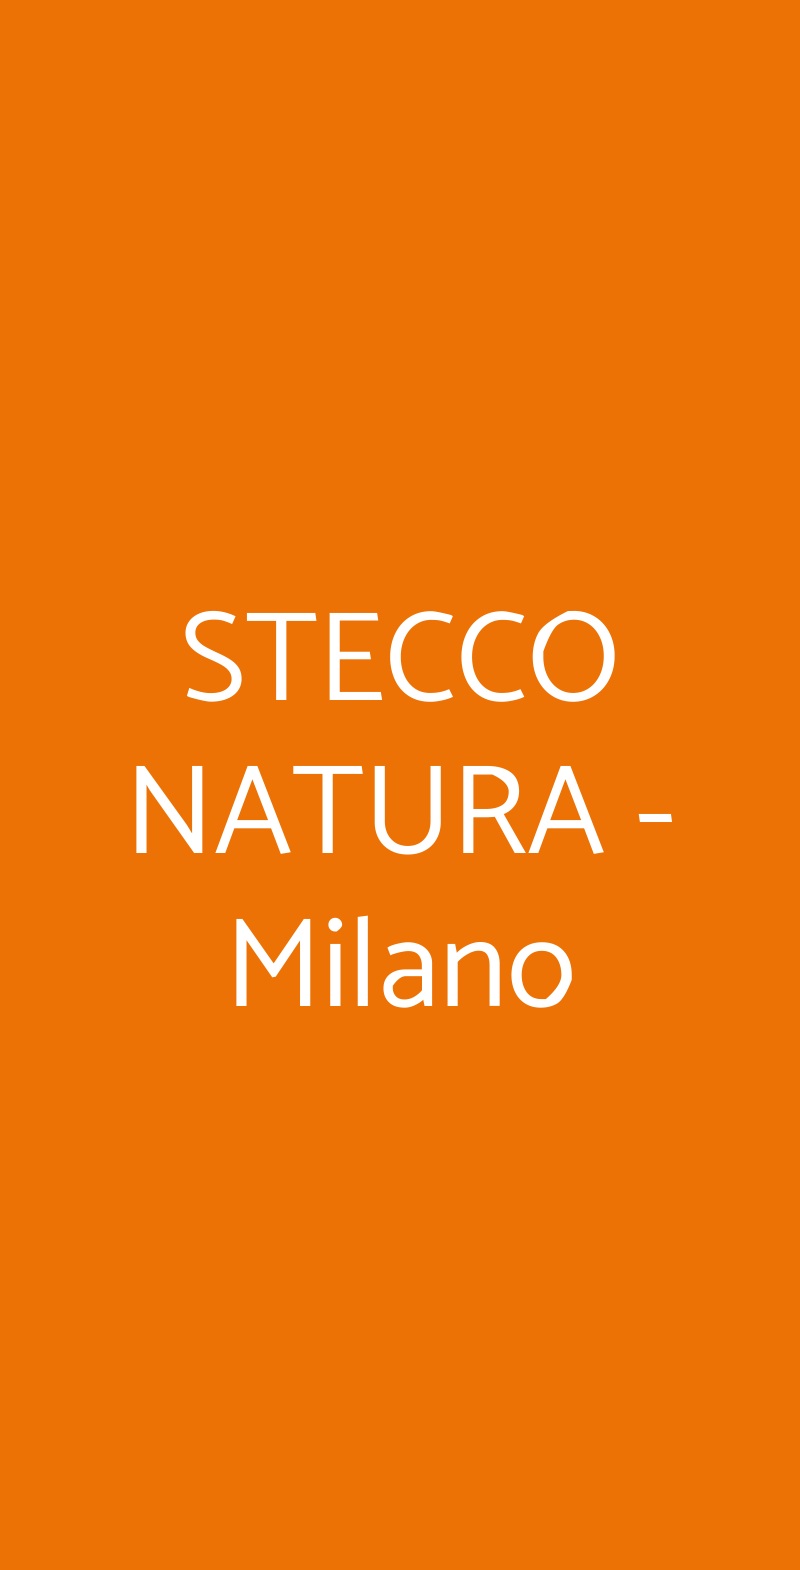 STECCO NATURA - Milano Milano menù 1 pagina